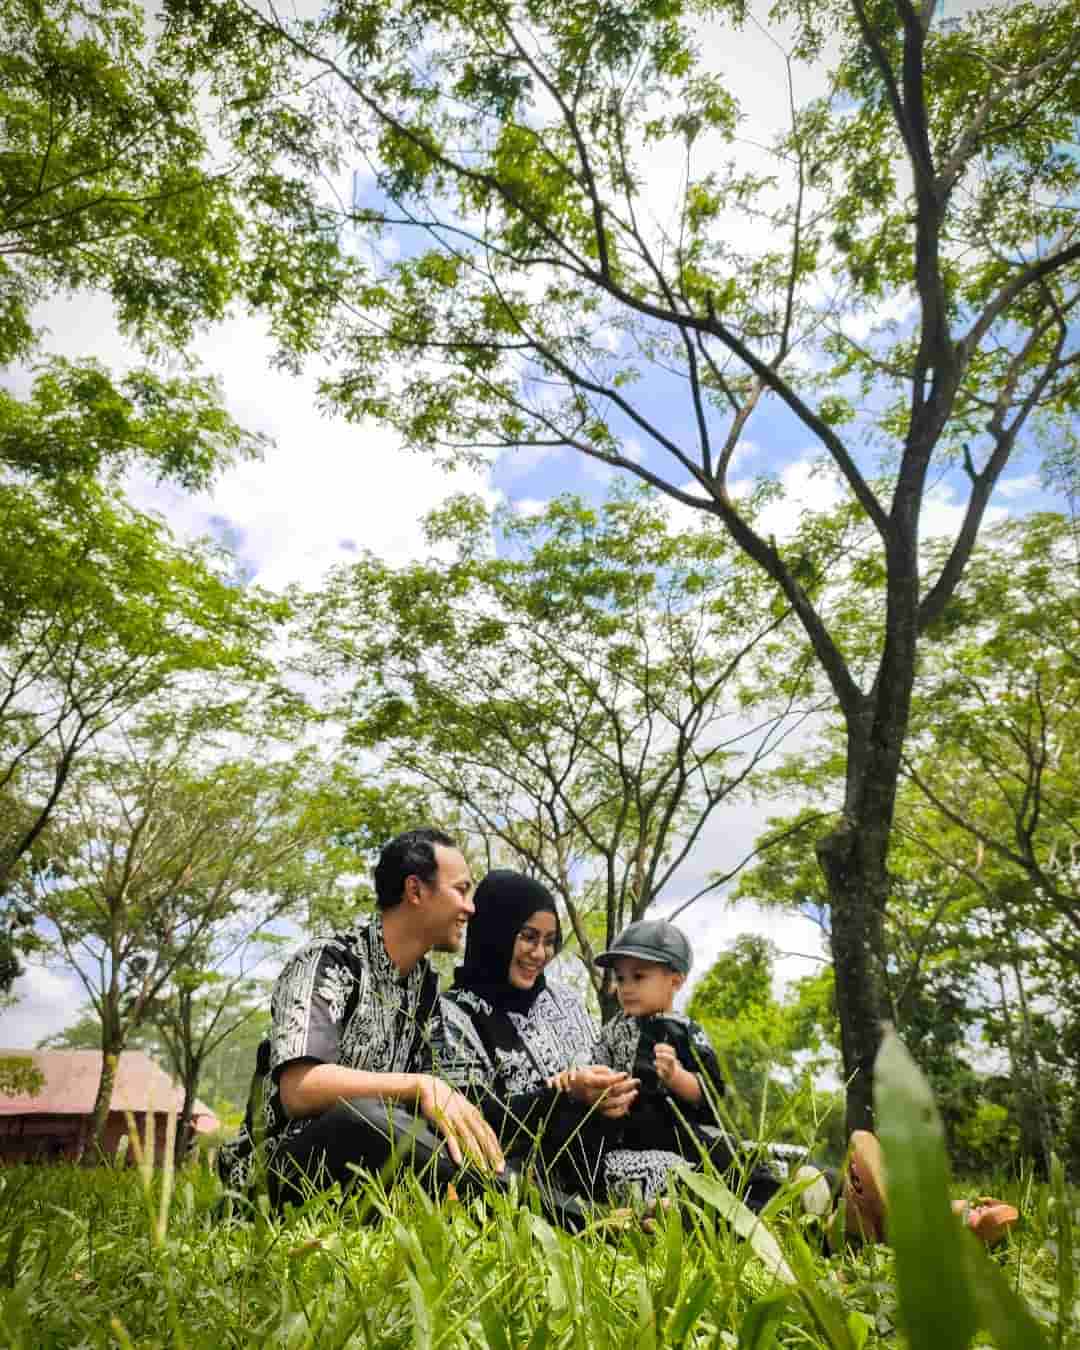 13 Objek Wisata Hingga Pantas Disebut Surga Pulau Jawa